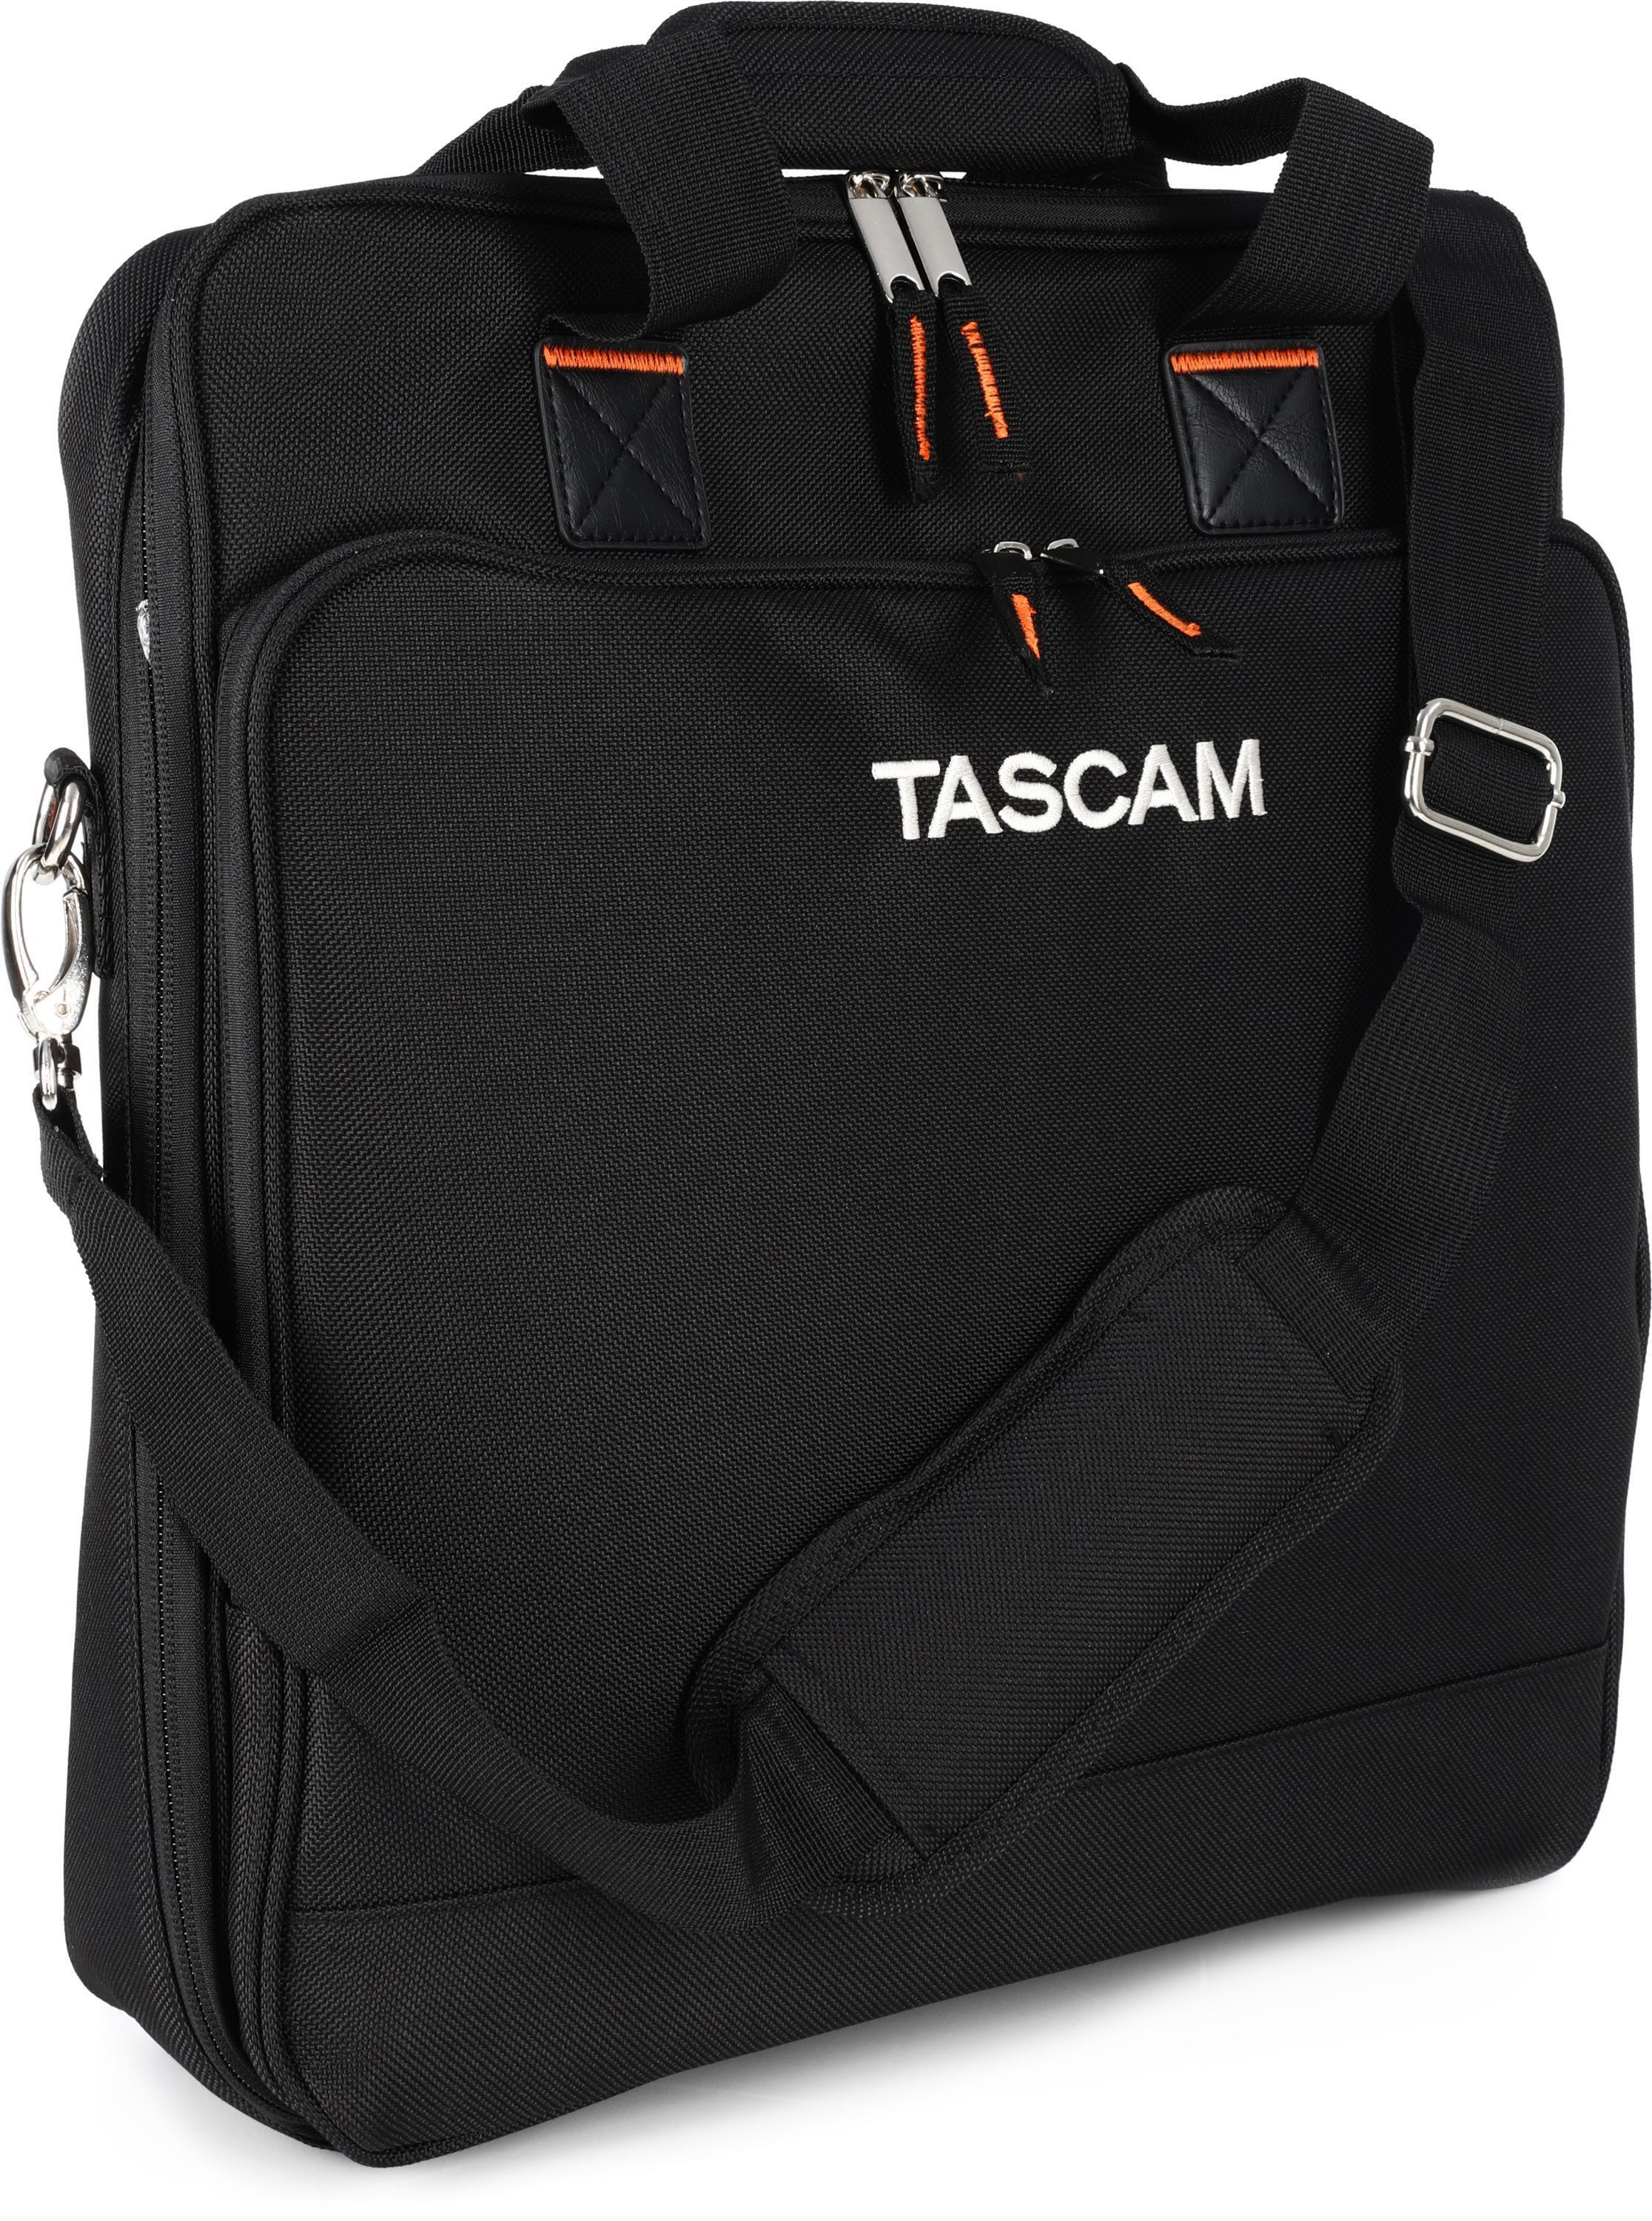 TASCAM CS-MODEL12 Padded Carrying Bag for Model 12 